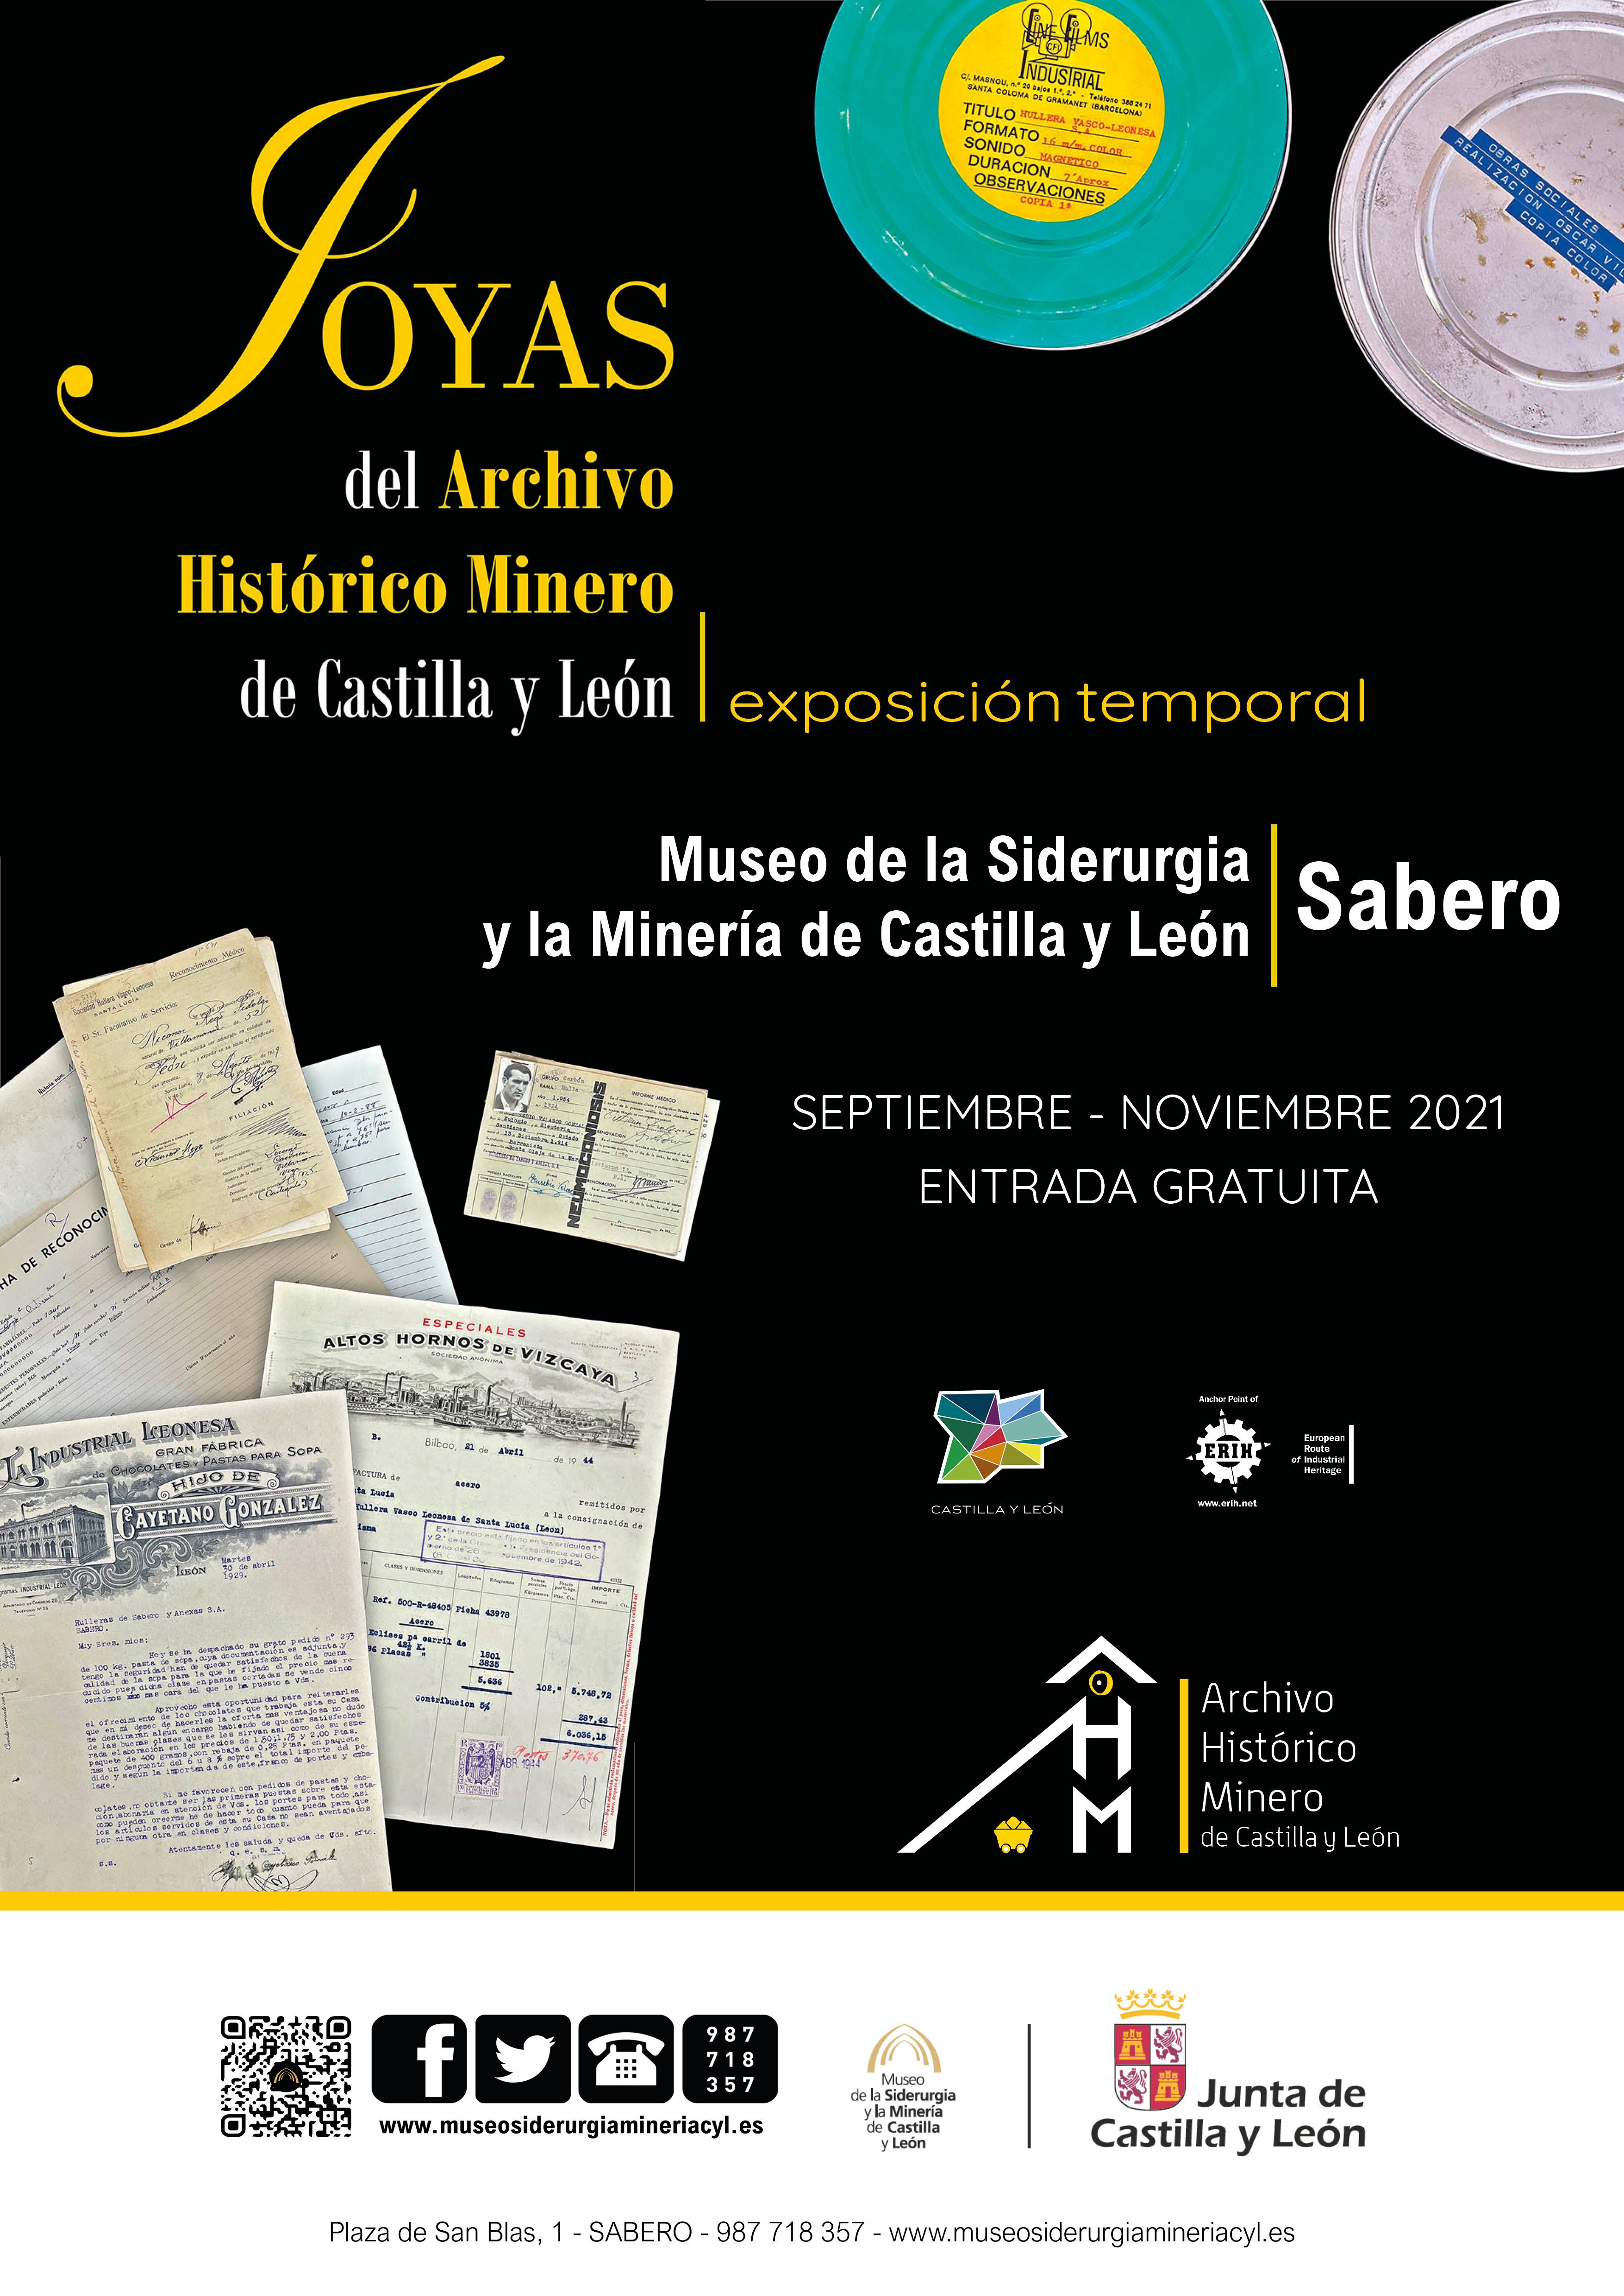 Joyas del Archivo Histórico Minero de Castilla y León0